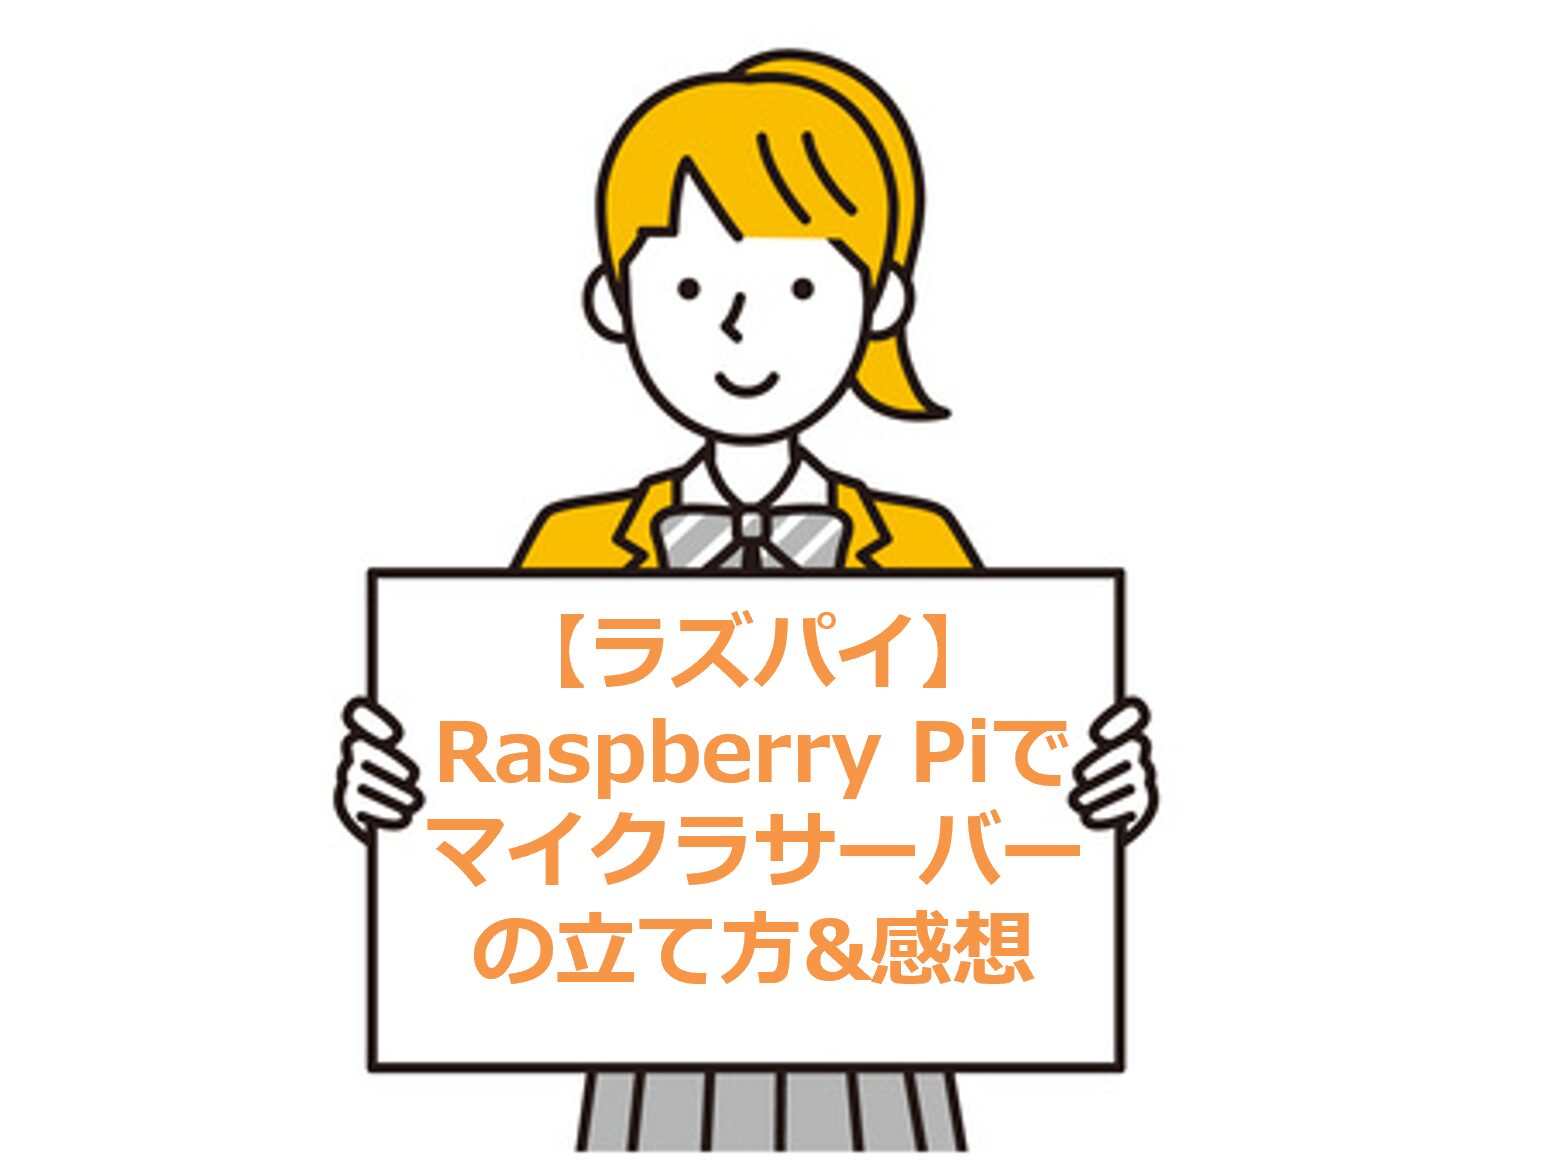 【ラズパイ】Raspberry Piでマイクラサーバーの立て方&感想